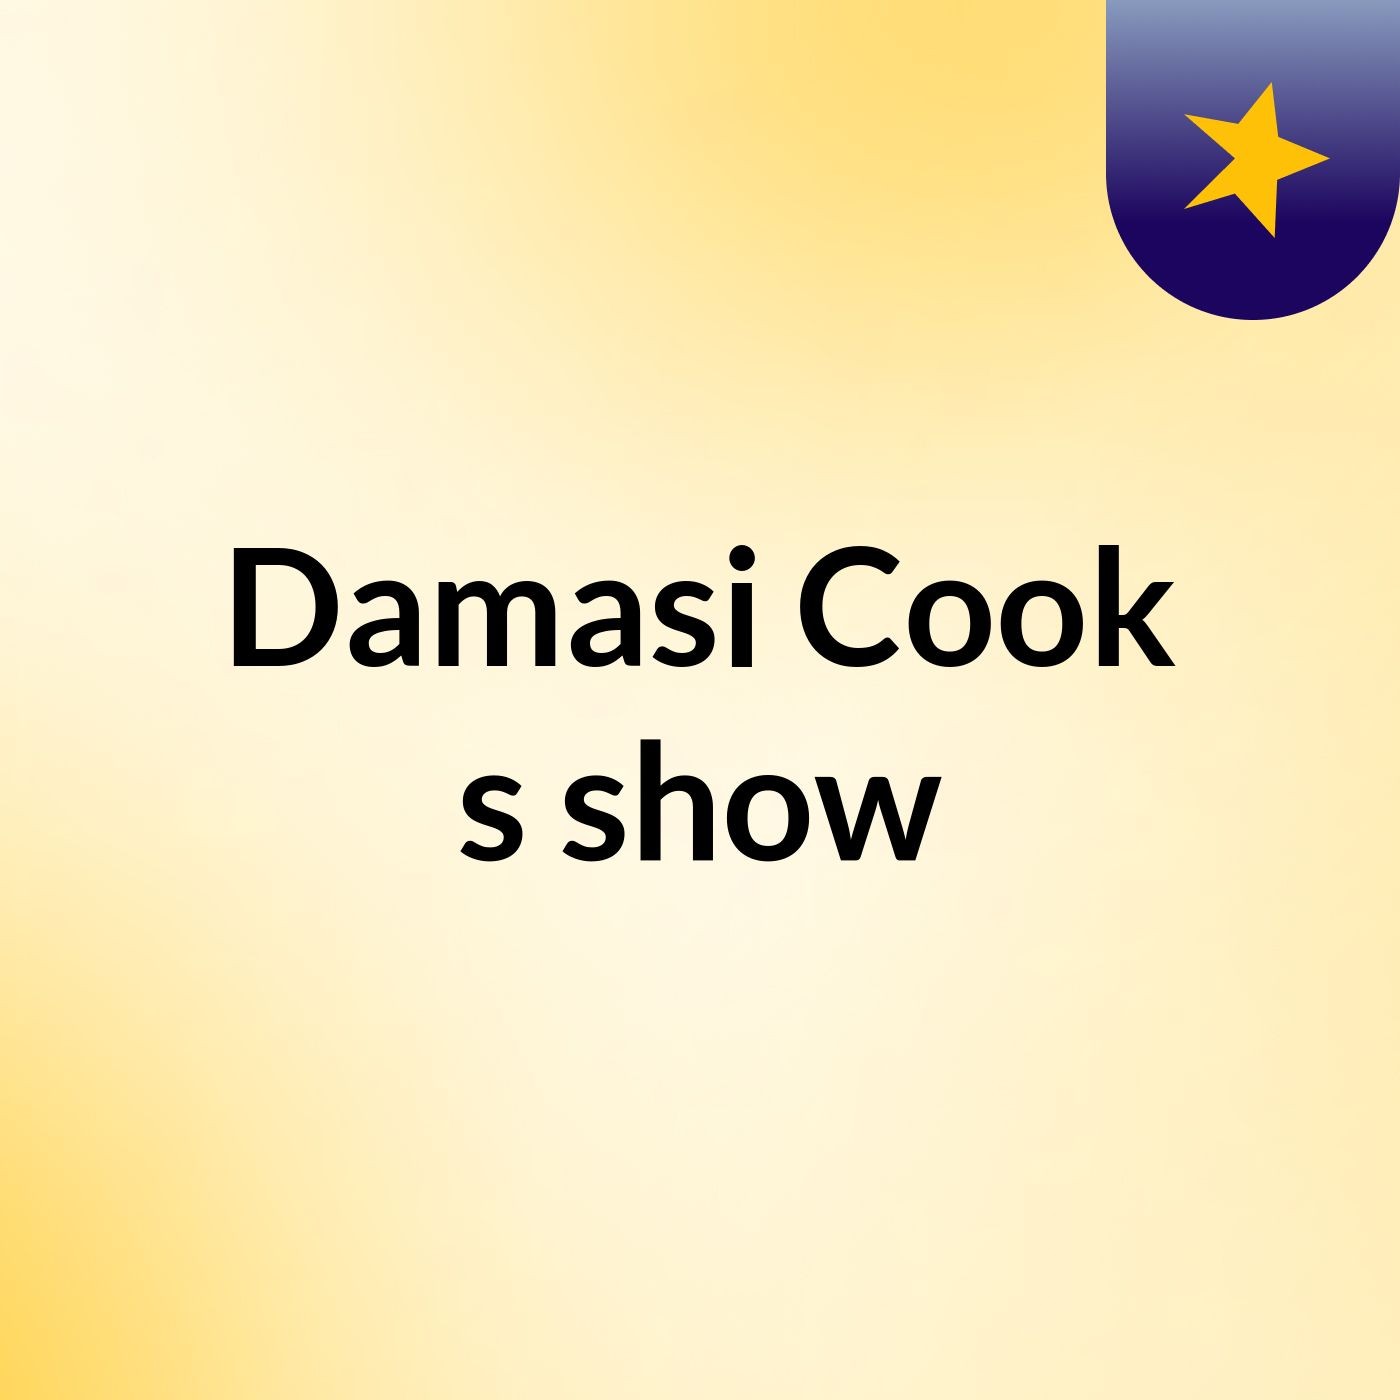 Damasi Cook's show